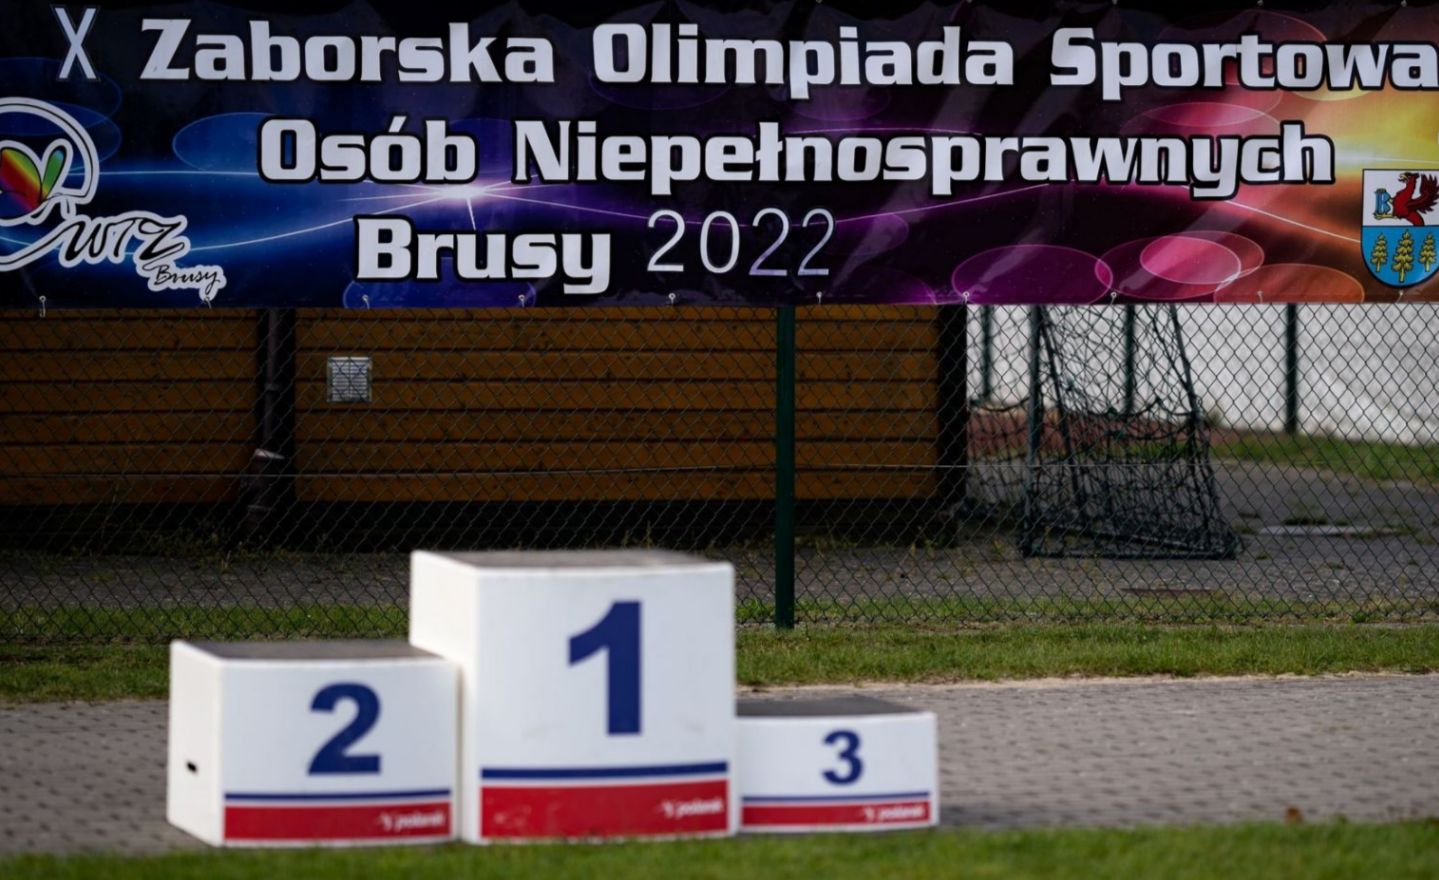 X_Zaborska_Olimpiada_Sportowa_Osob_Niepelnosprawnych_w_Brusach.jpg